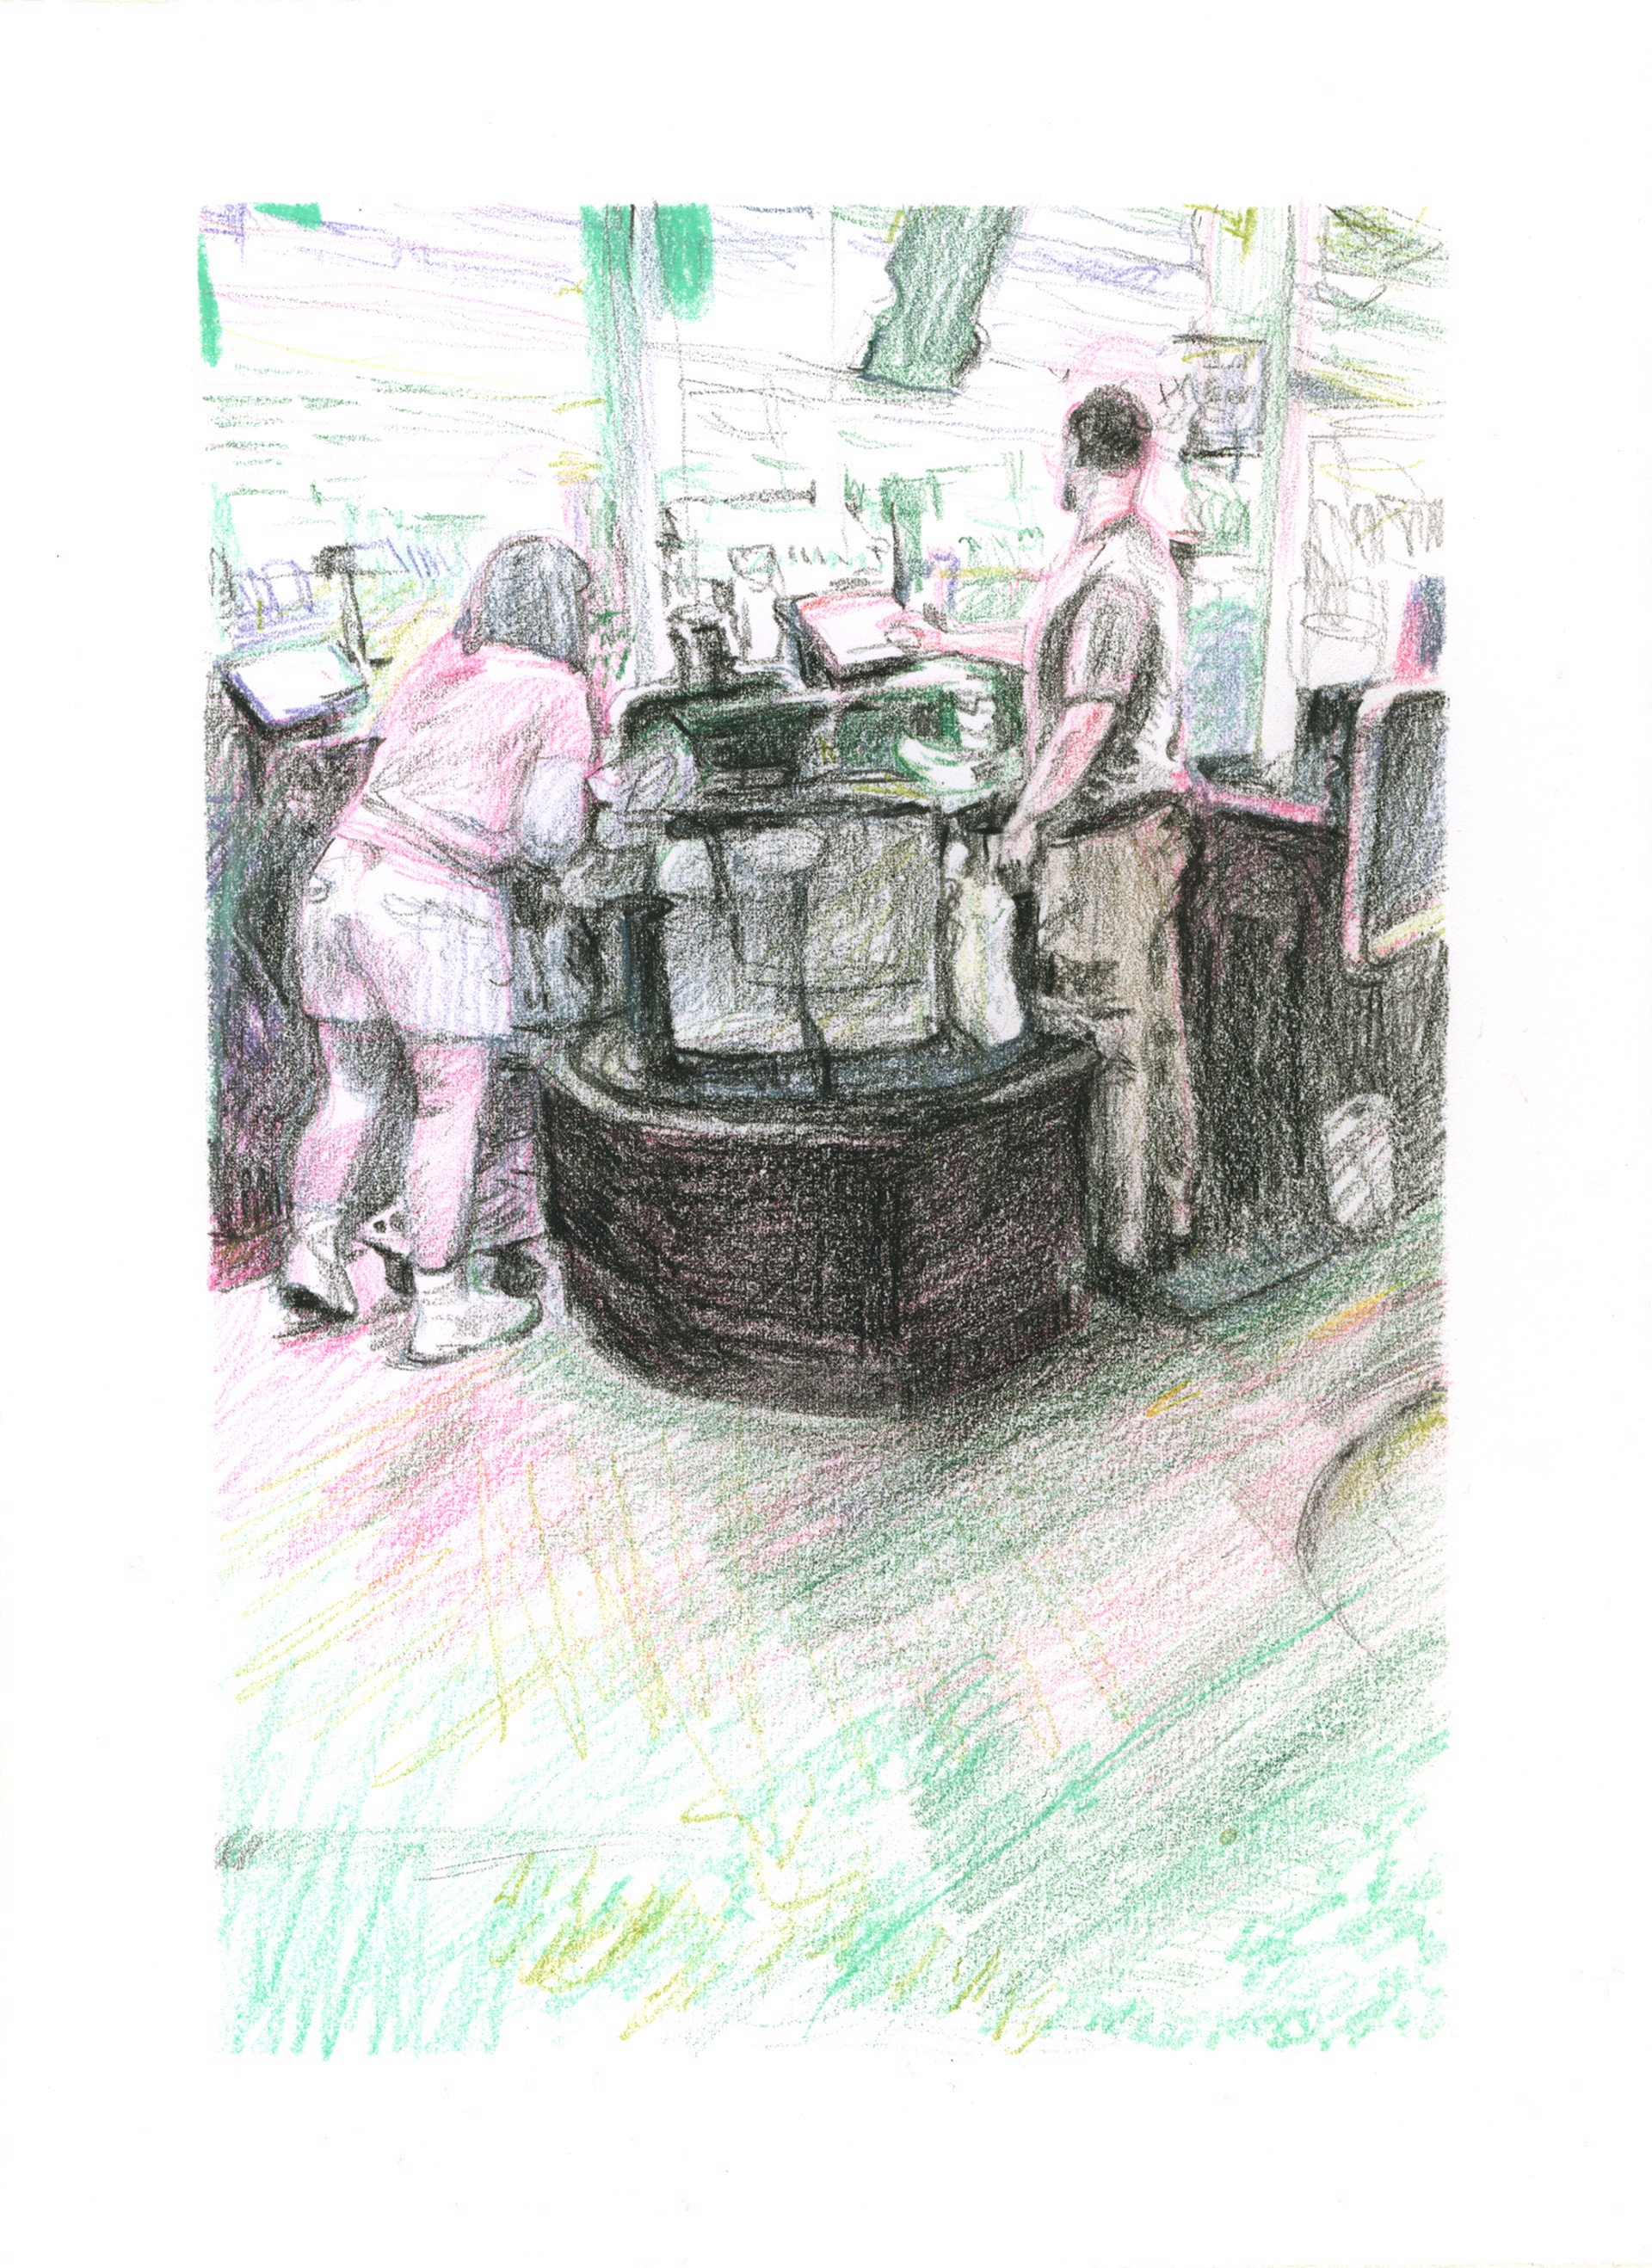 Marketplace/Cashier #43 by Eilis Crean